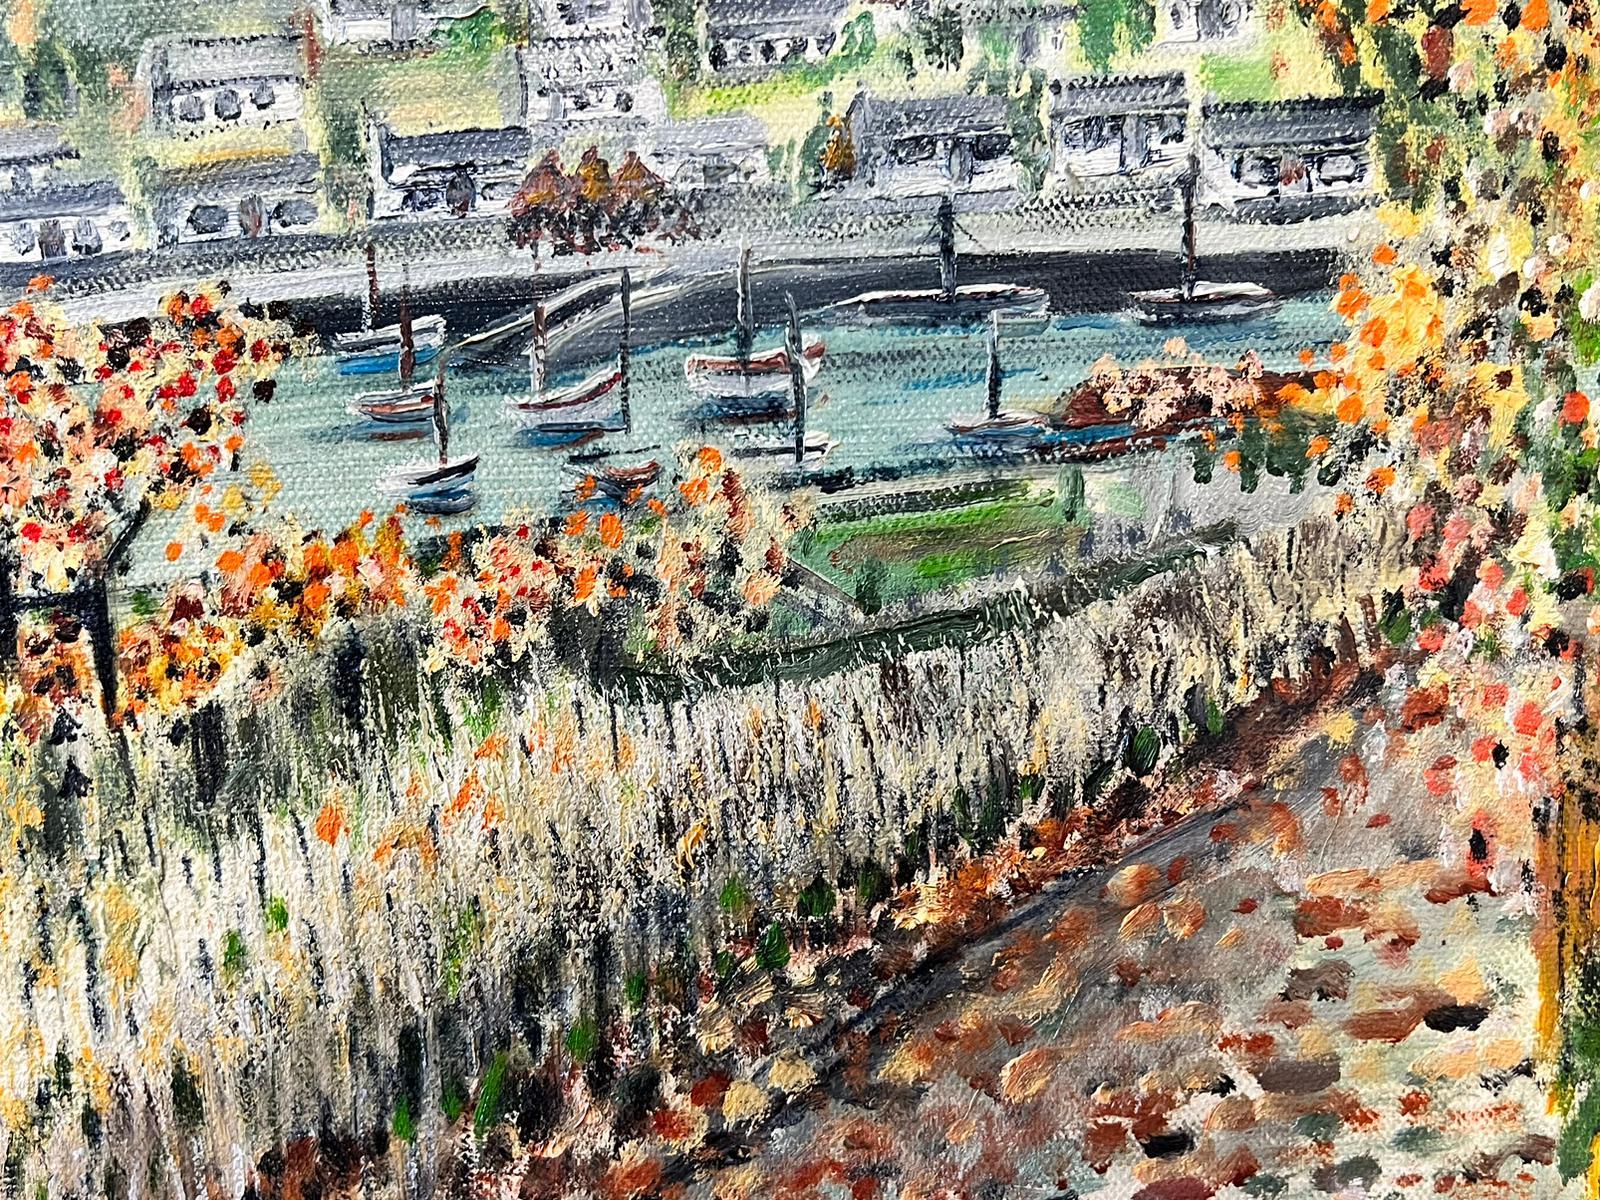 Paysage fluvial de style pointilliste avec arbres et vue éloignée de la ville - Painting de Contemporary British 